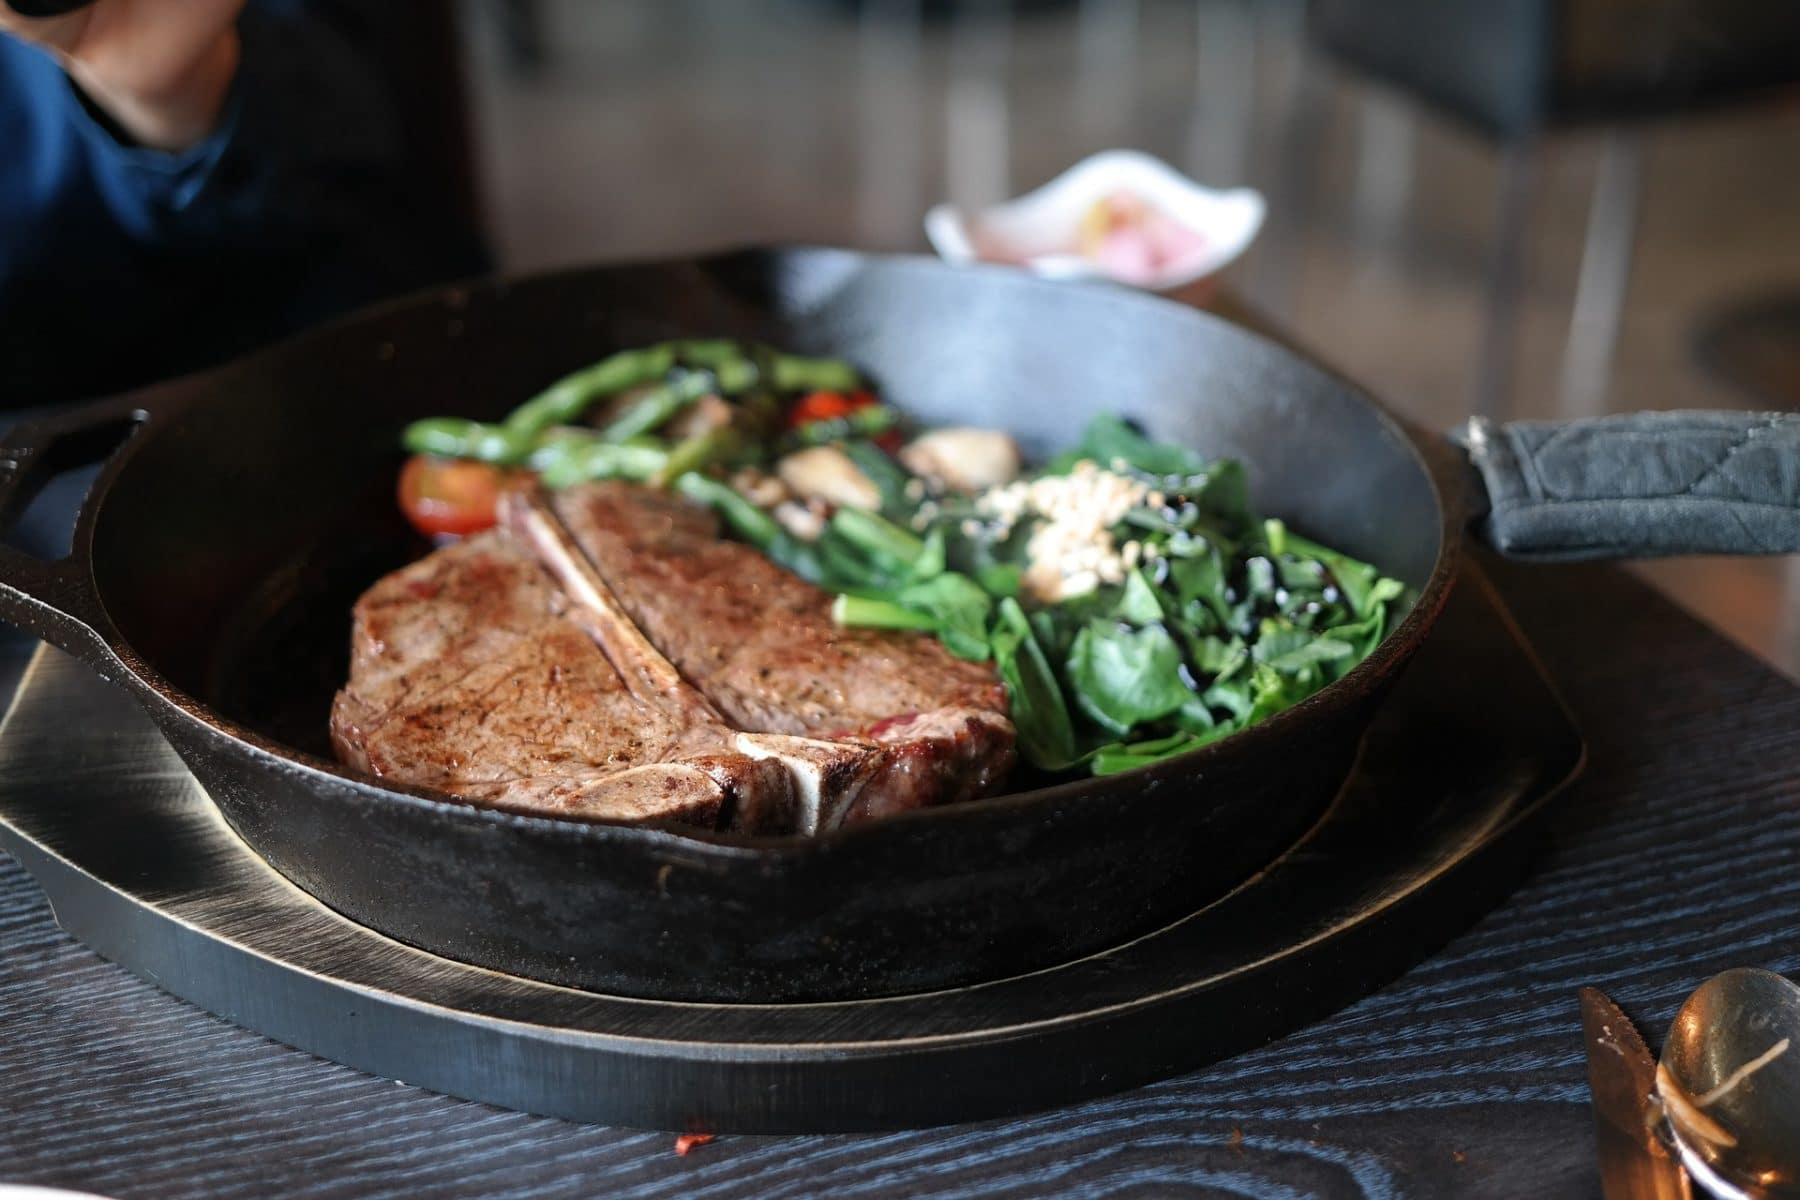 Gusseisenpfanne in Aktion mit Steak und Gemüse